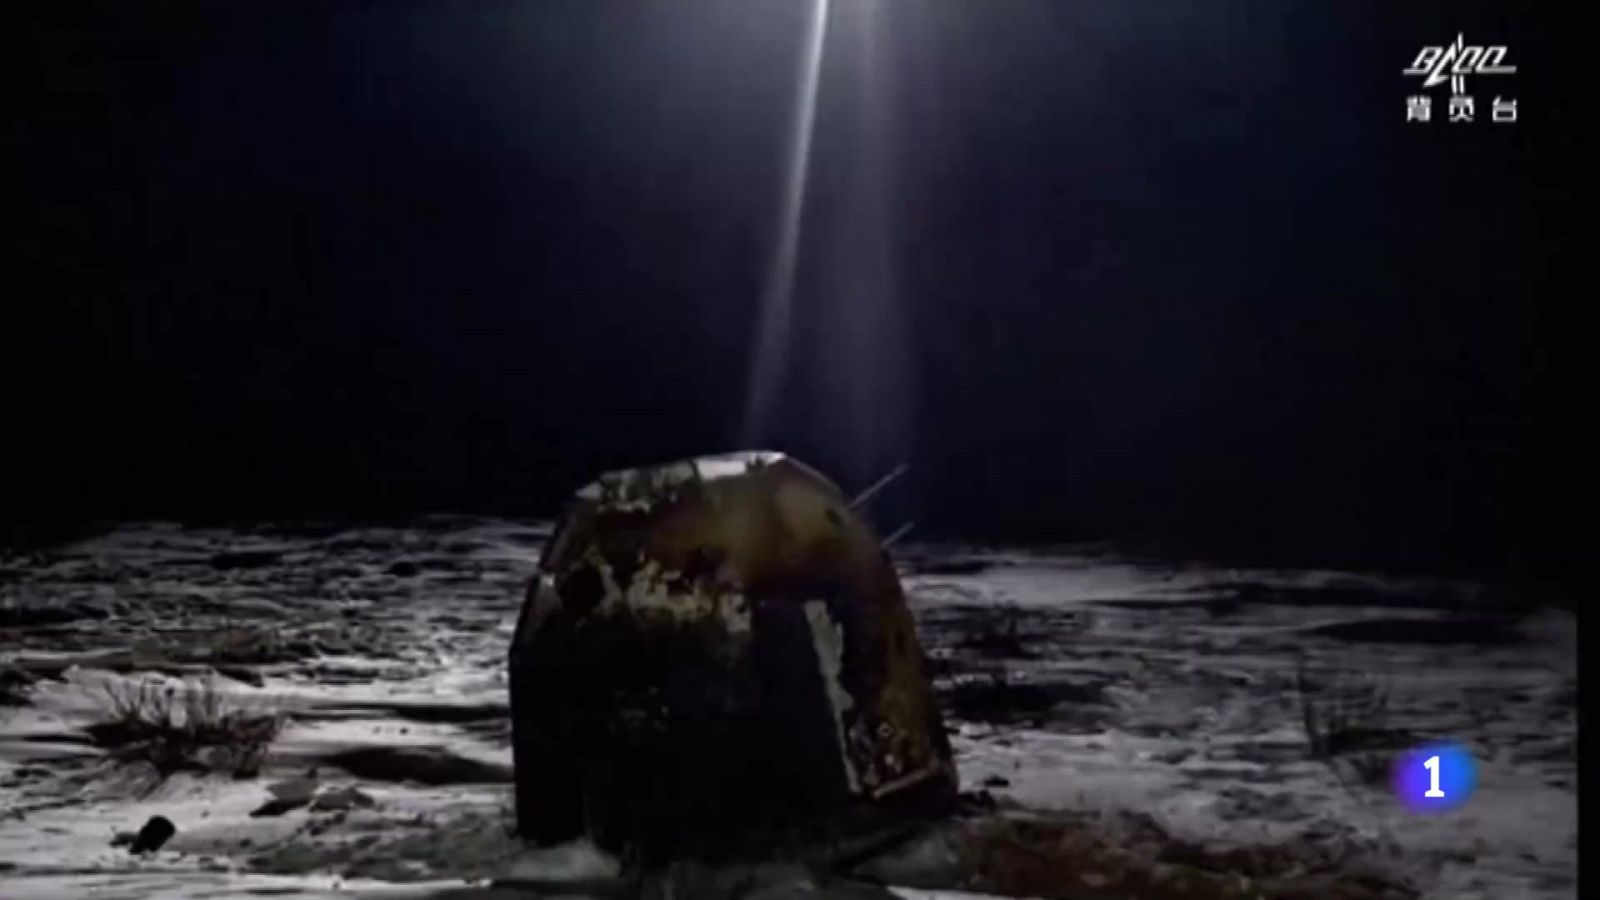 Llegan a la Tierra los dos kilos de roca recogidos en la Luna por una misión espacial china